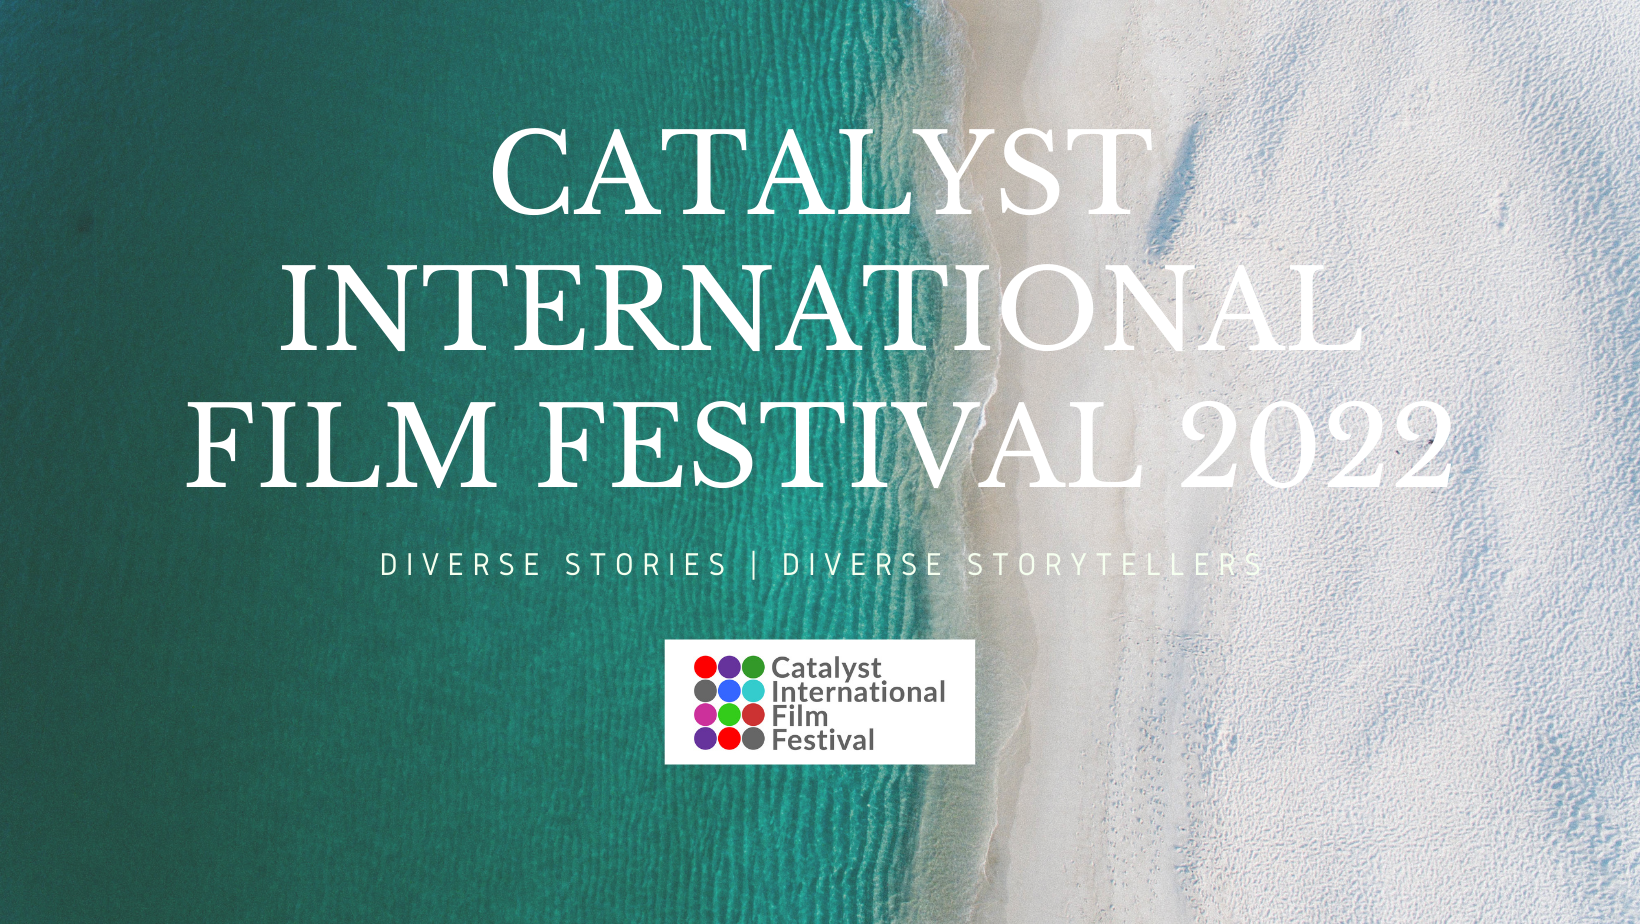 CATALYST INTERNATIONAL FILM FESTIVAL